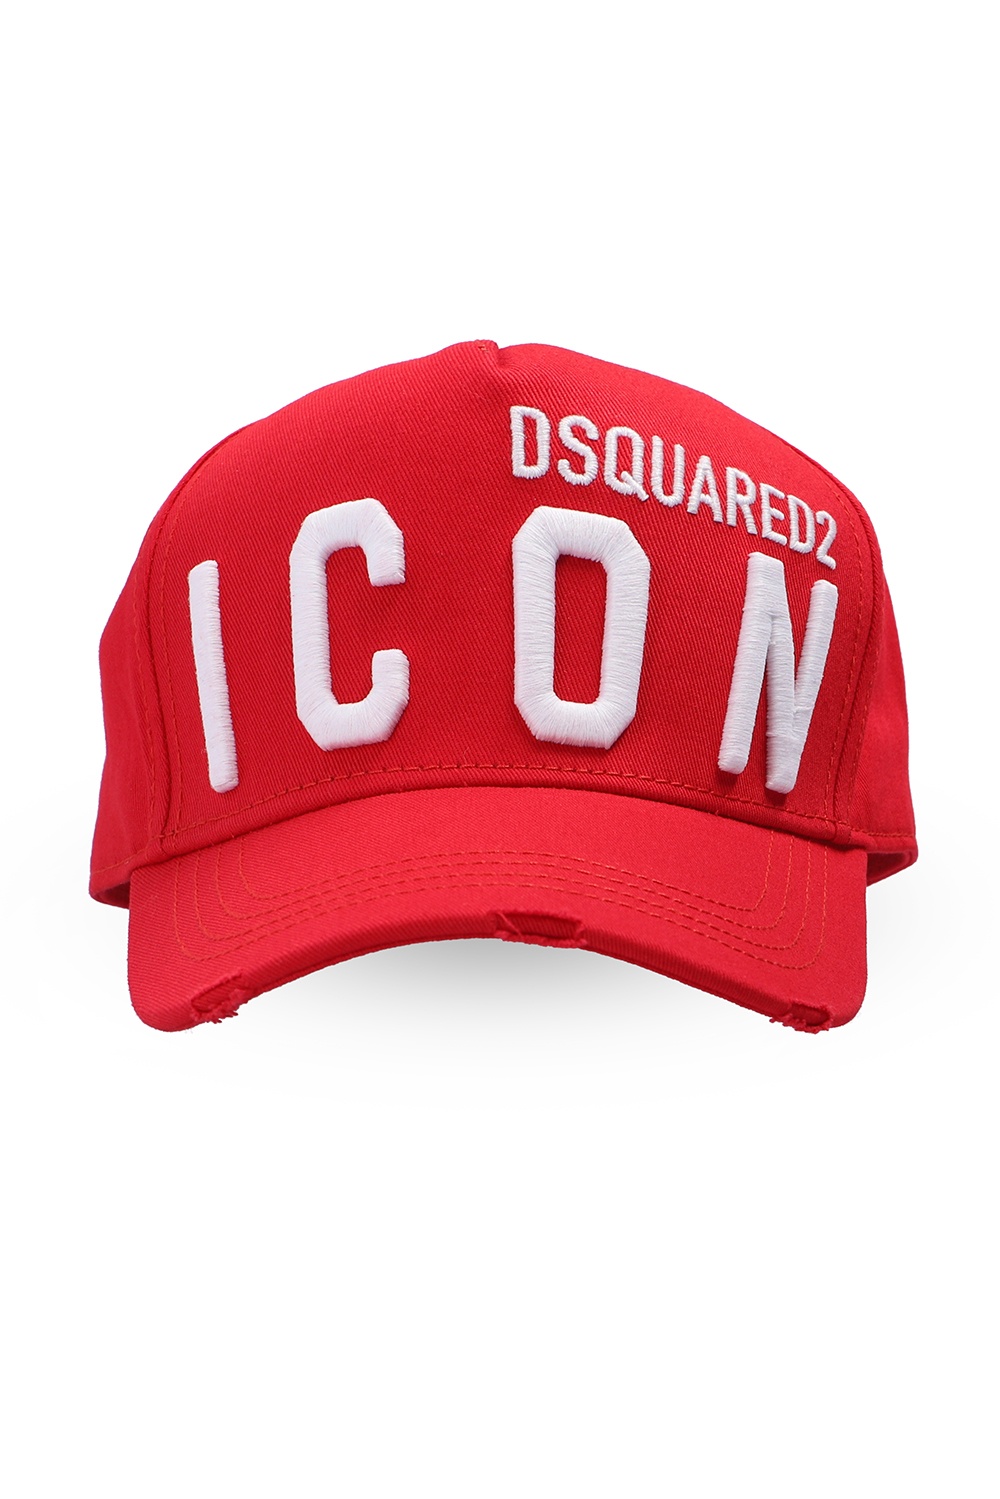 Dsquared2 Rag & Bone Hats